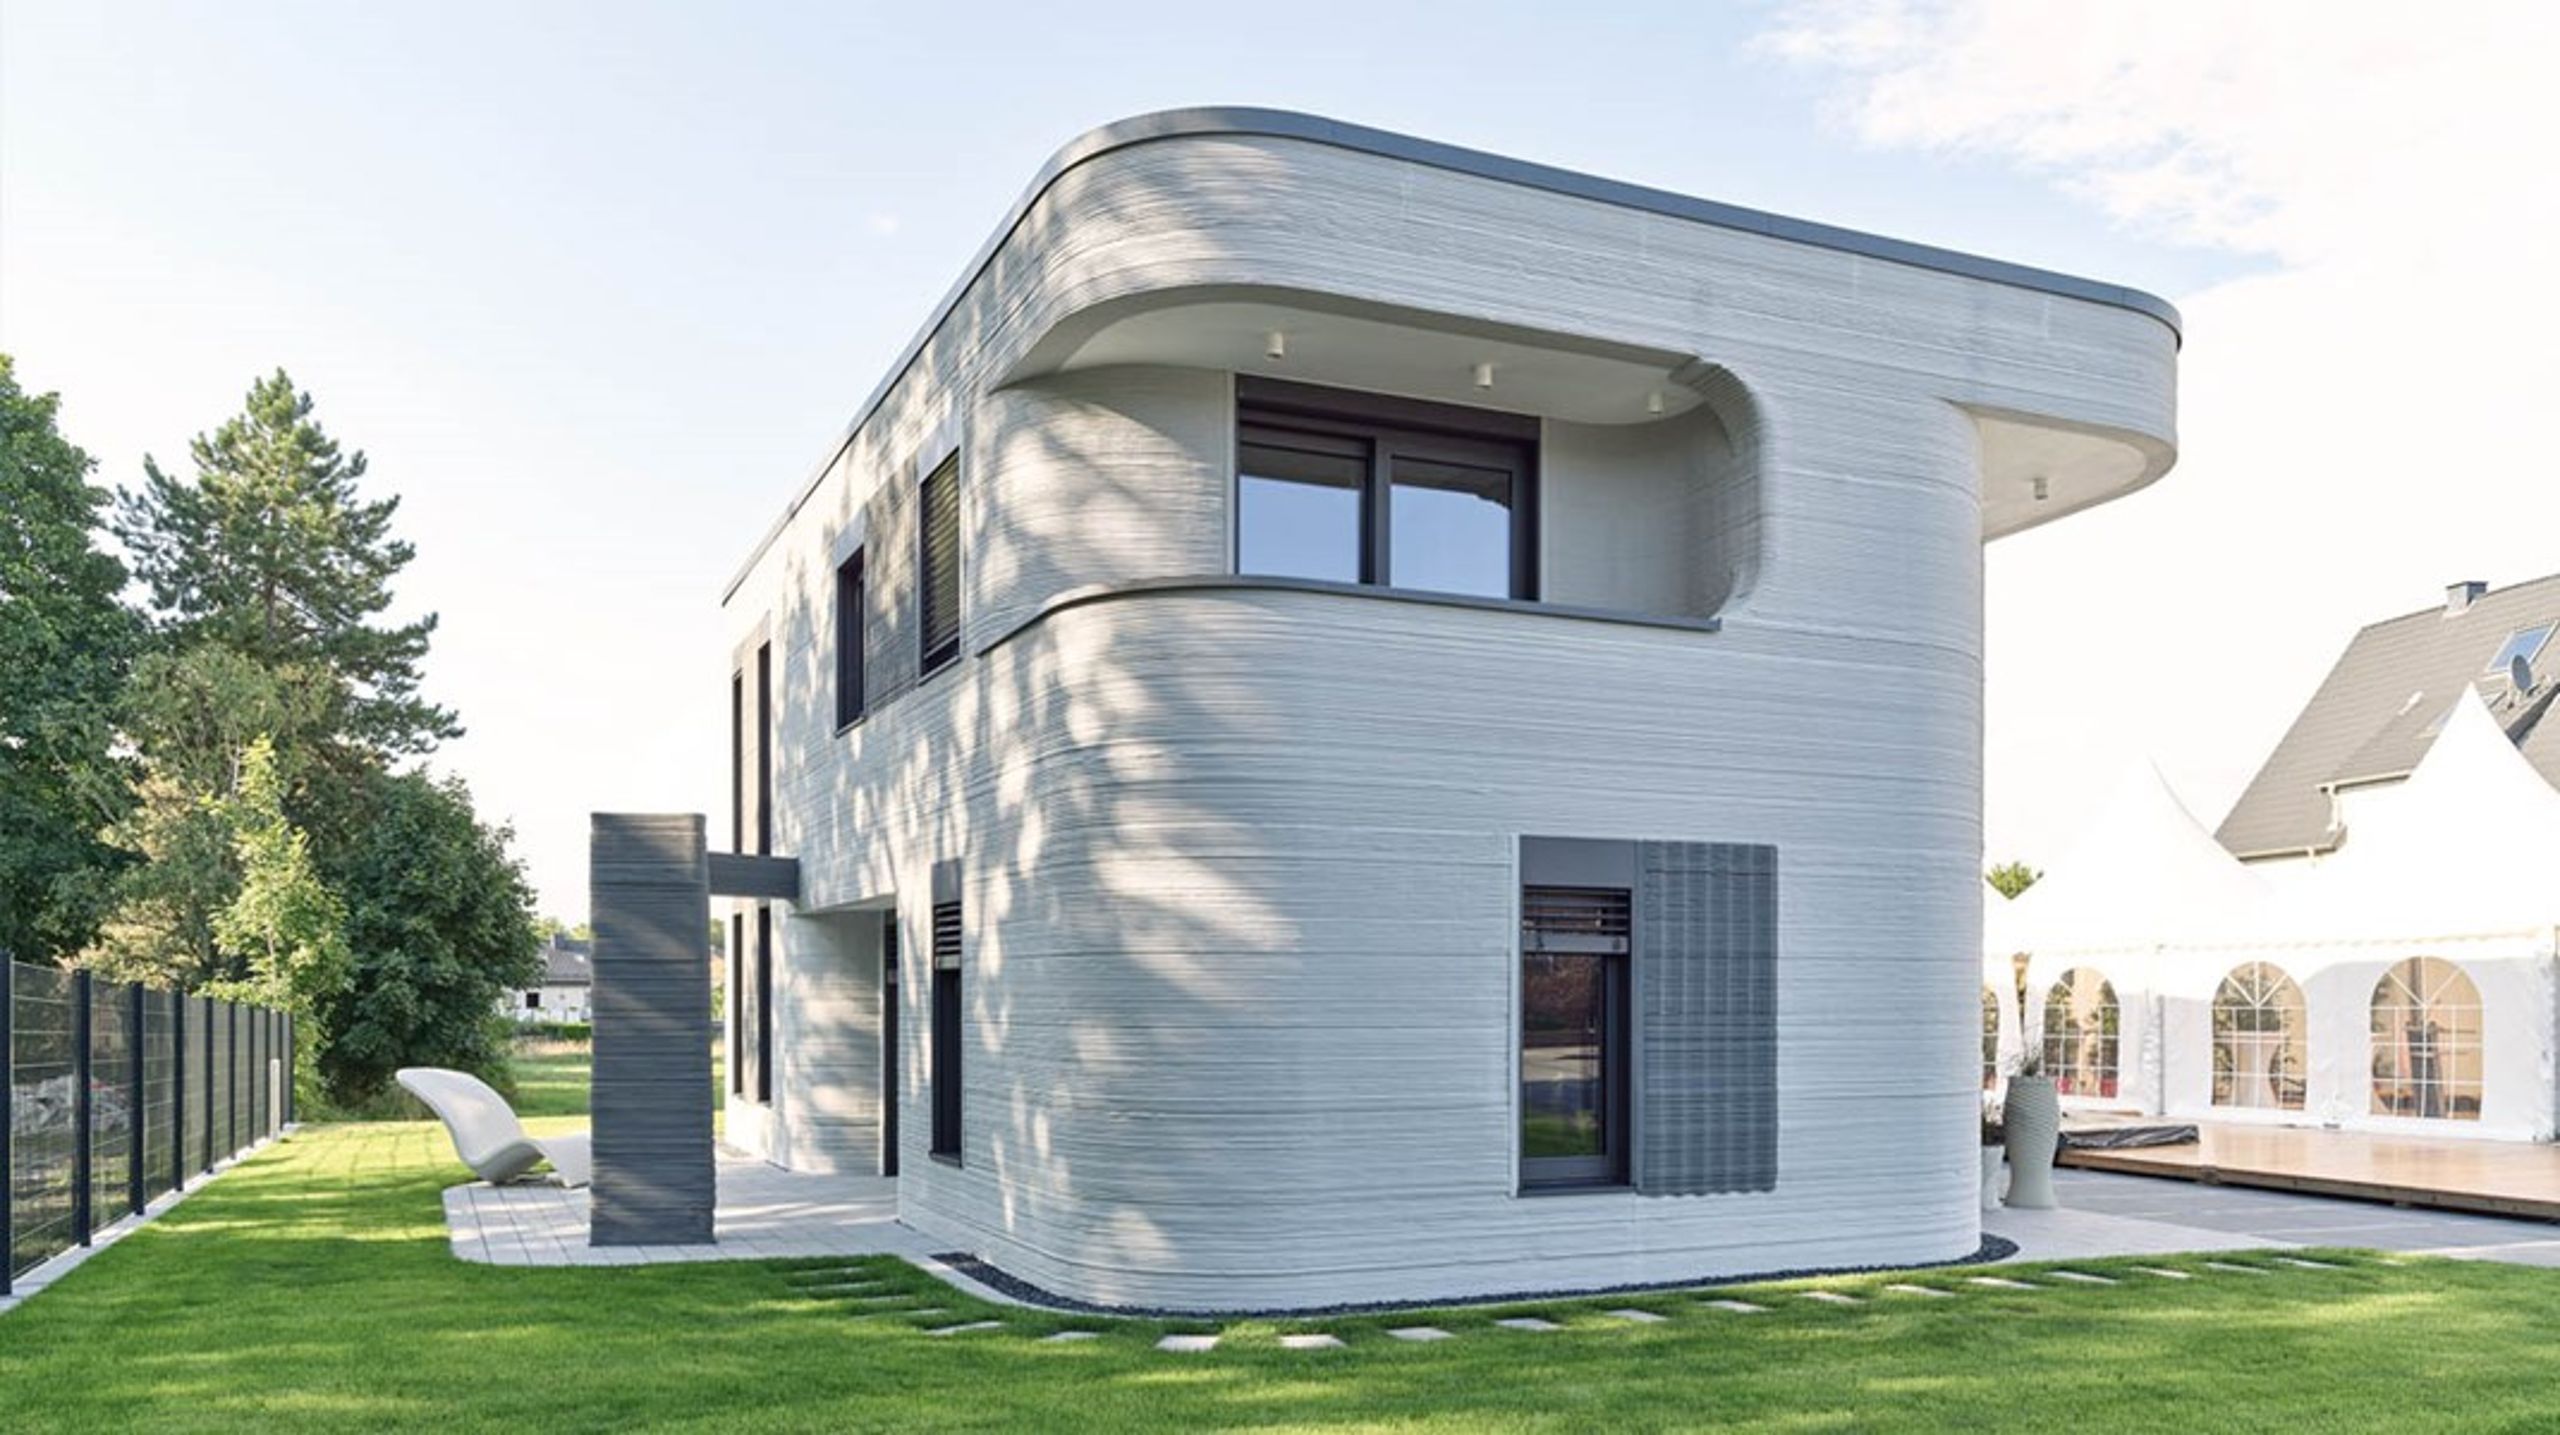 Huset i Beckum i Tyskland er på 160 kvadratmeter. Det var det første to etagers printede hus i Tyskland, da det blev opført i 2020.